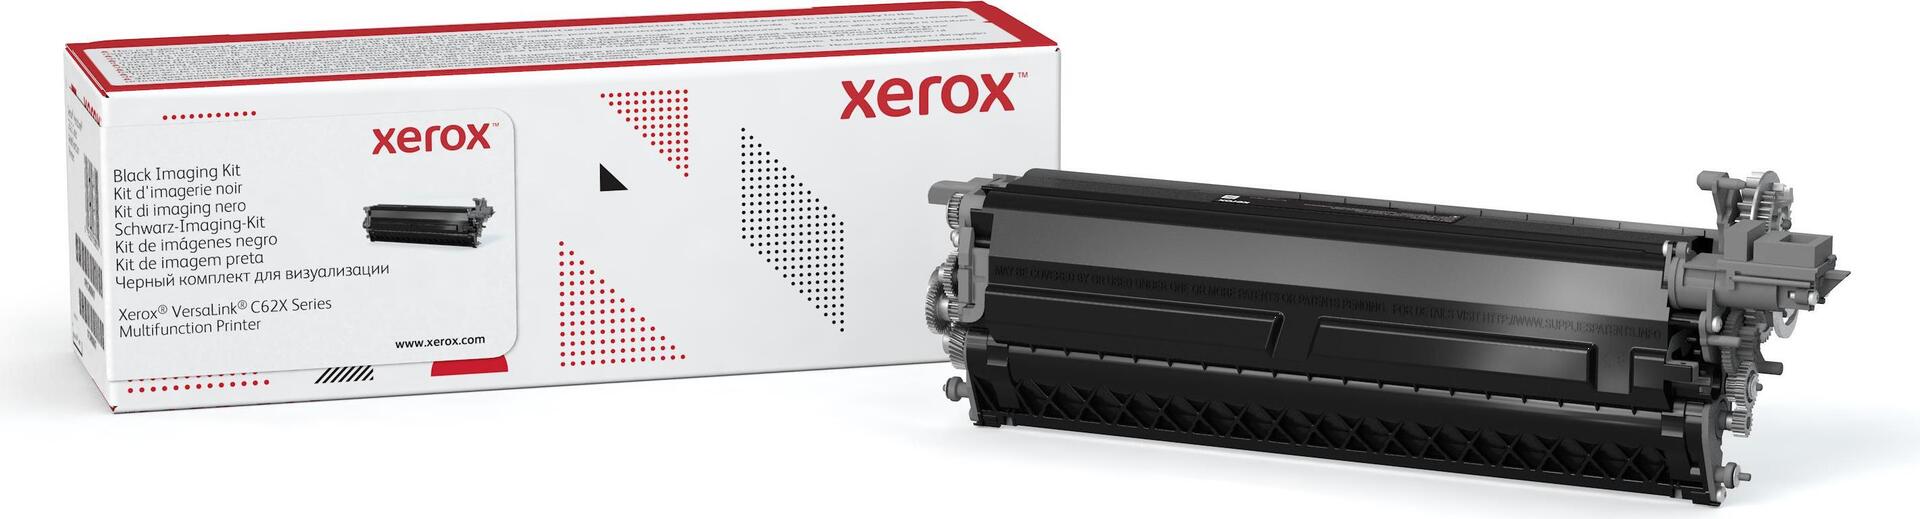 Xerox VersaLink C625 Belichtungseinheit Schwarz (150.000 Seiten) (langlebiges Produkt - in der Regel bei durchschnittlicher Nutzung nicht erforderlich) (013R00697)